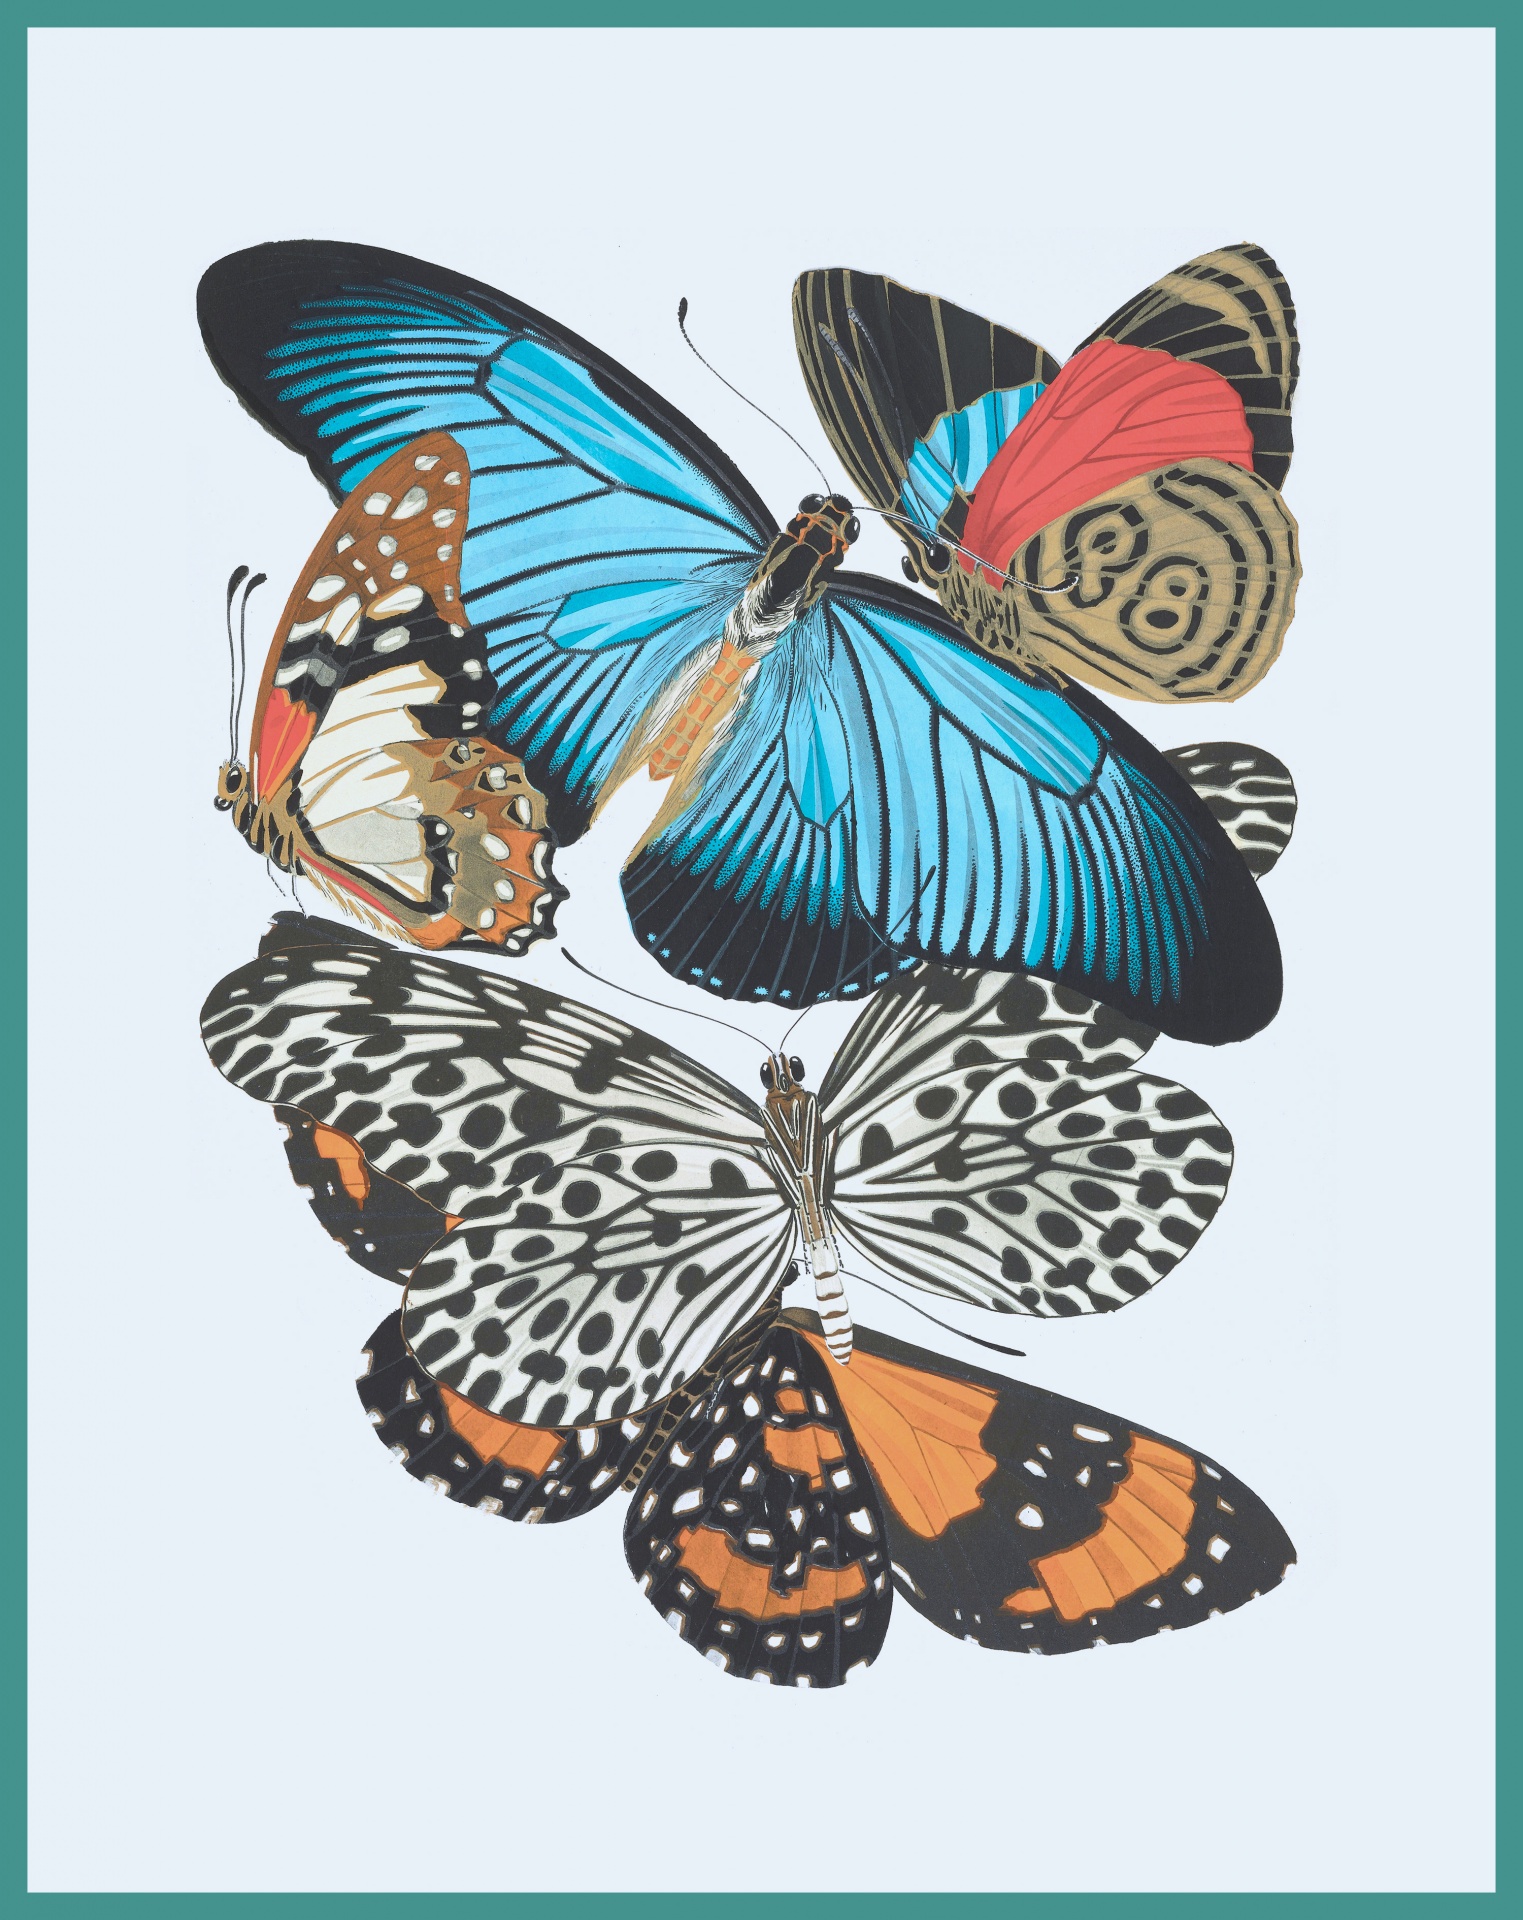 Stampa artistica di farfalle